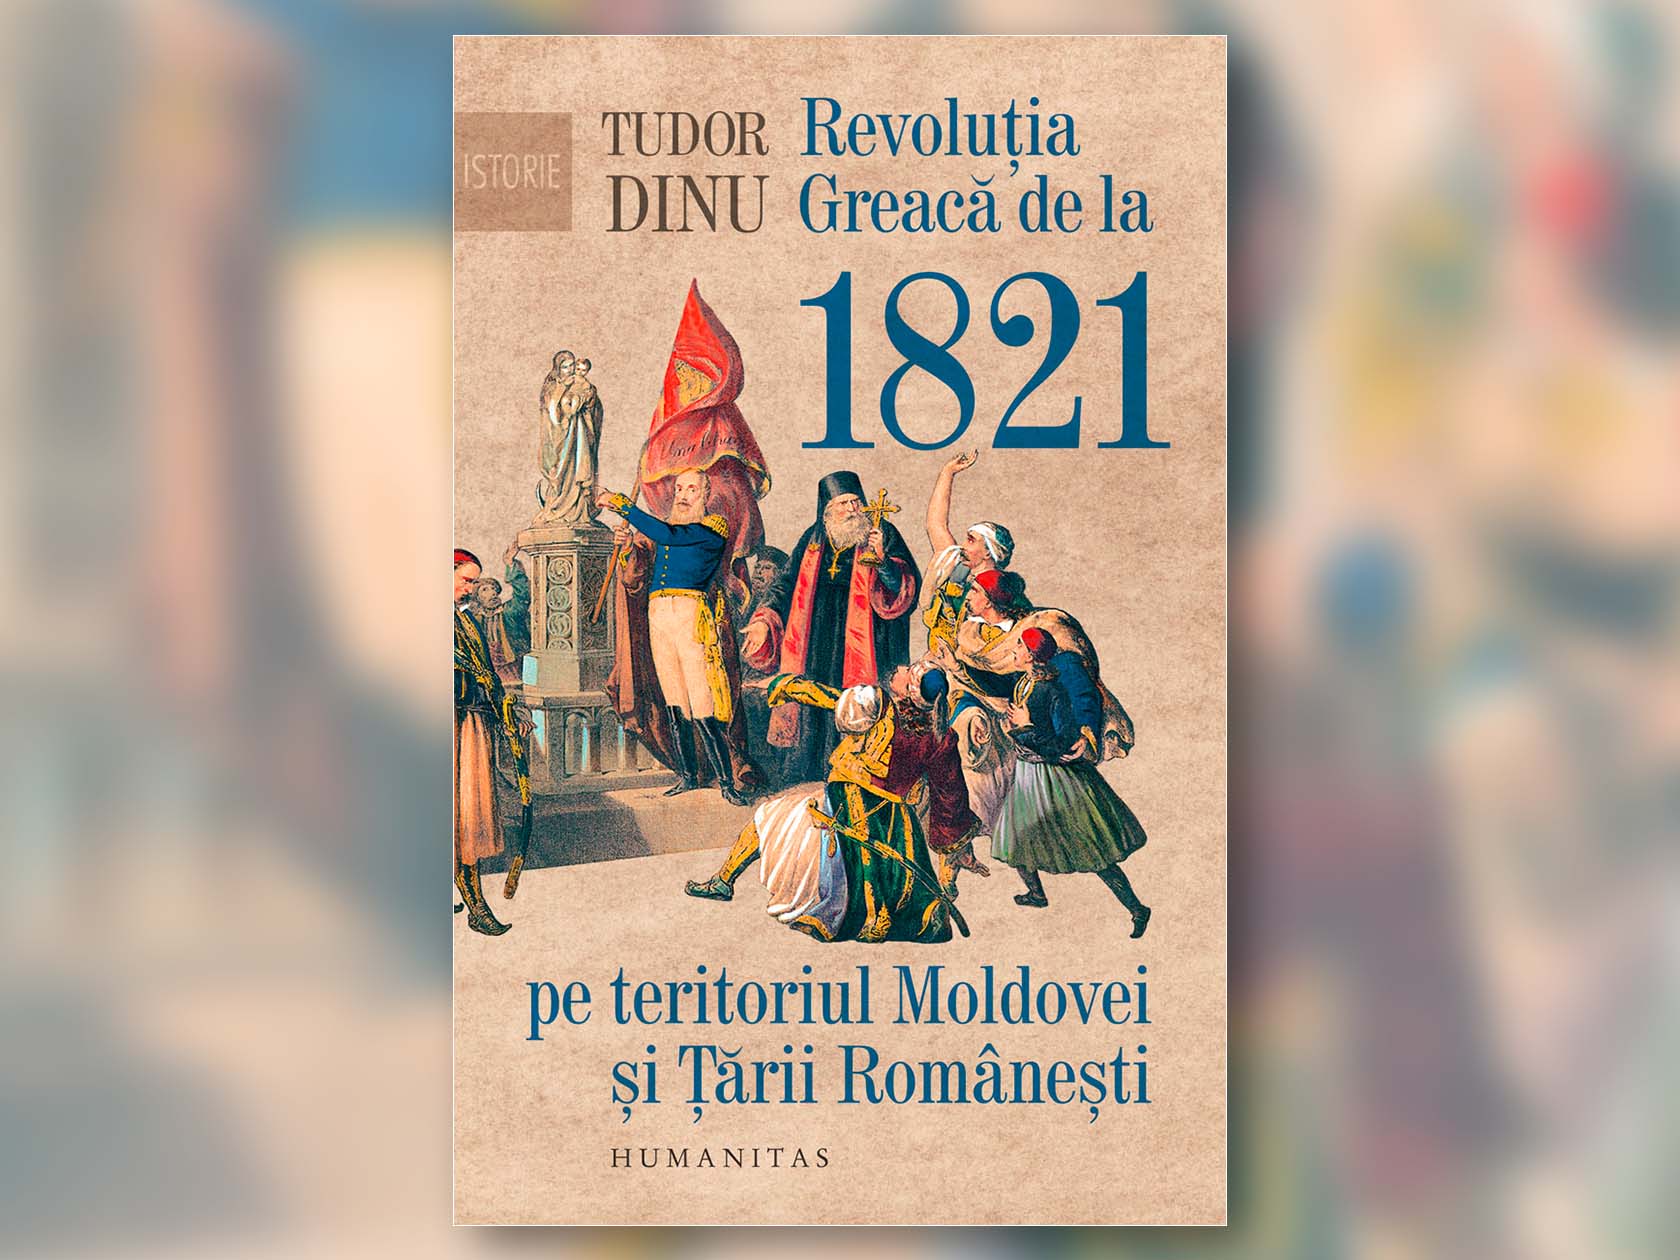 10 (δέκα): Η Ελληνική Επανάσταση, οι ρουμανικές χώρες και η γευστική ιστορία